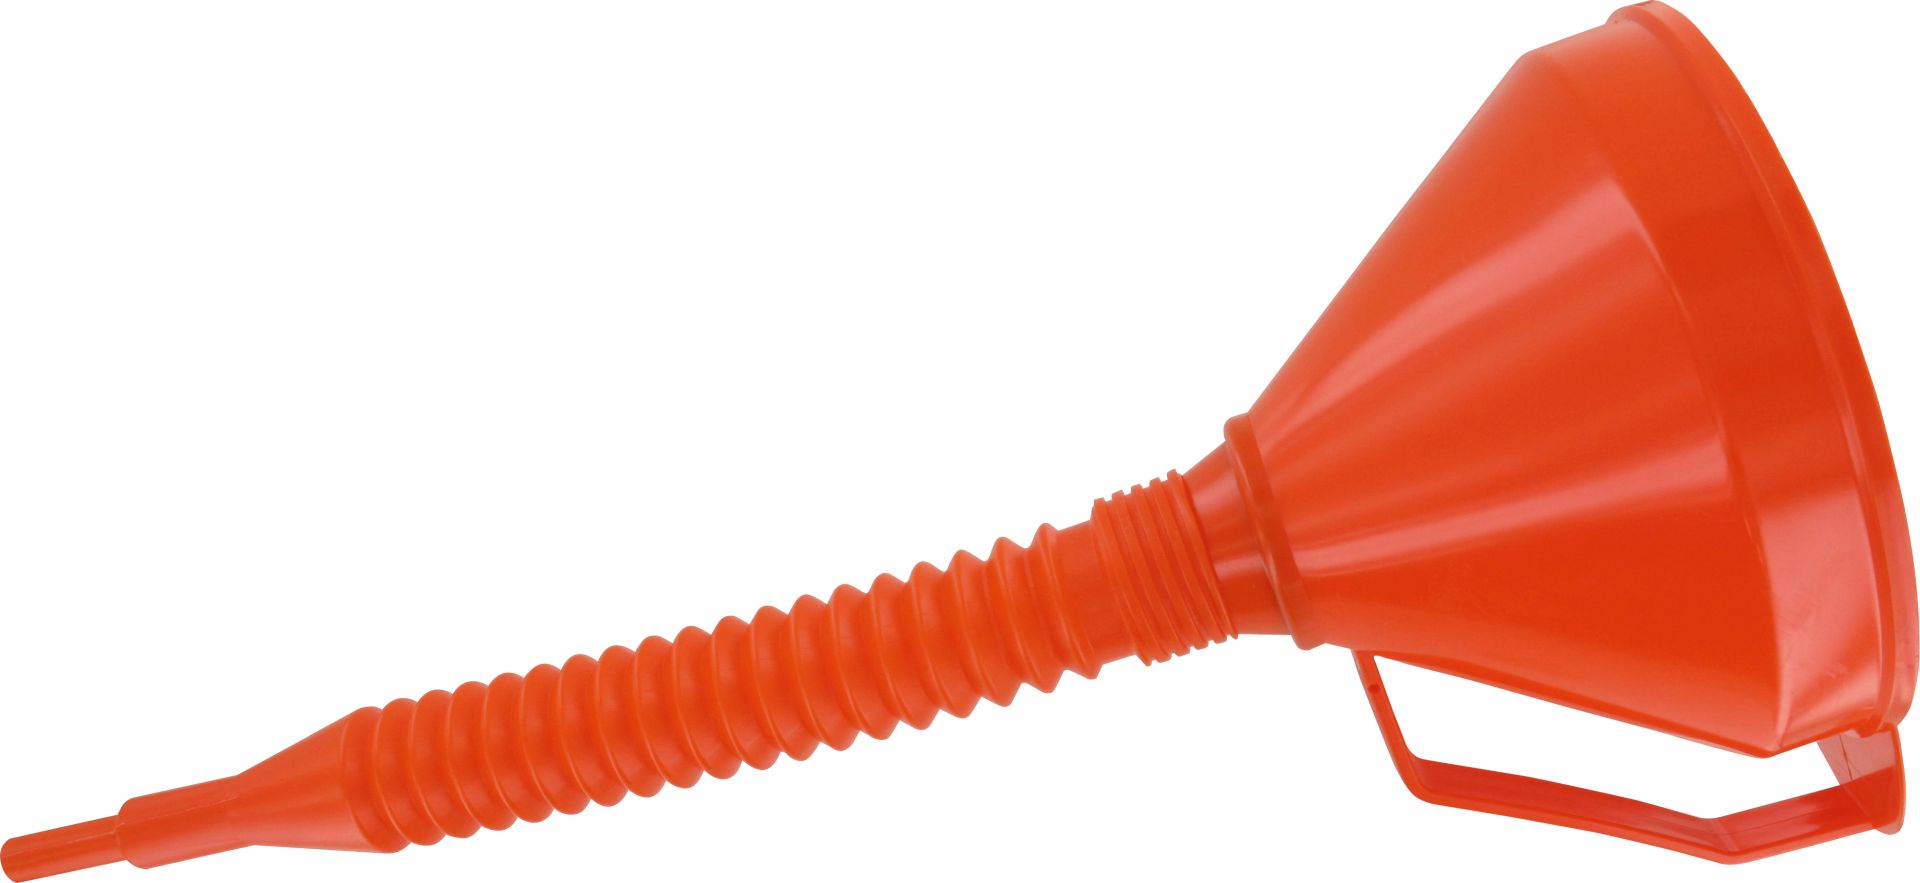 TRIUSO Trichter, mit Sieb und flexiblem Schlauch, orange, Länge Flexauslauf 320 mm, Ø 160 mm